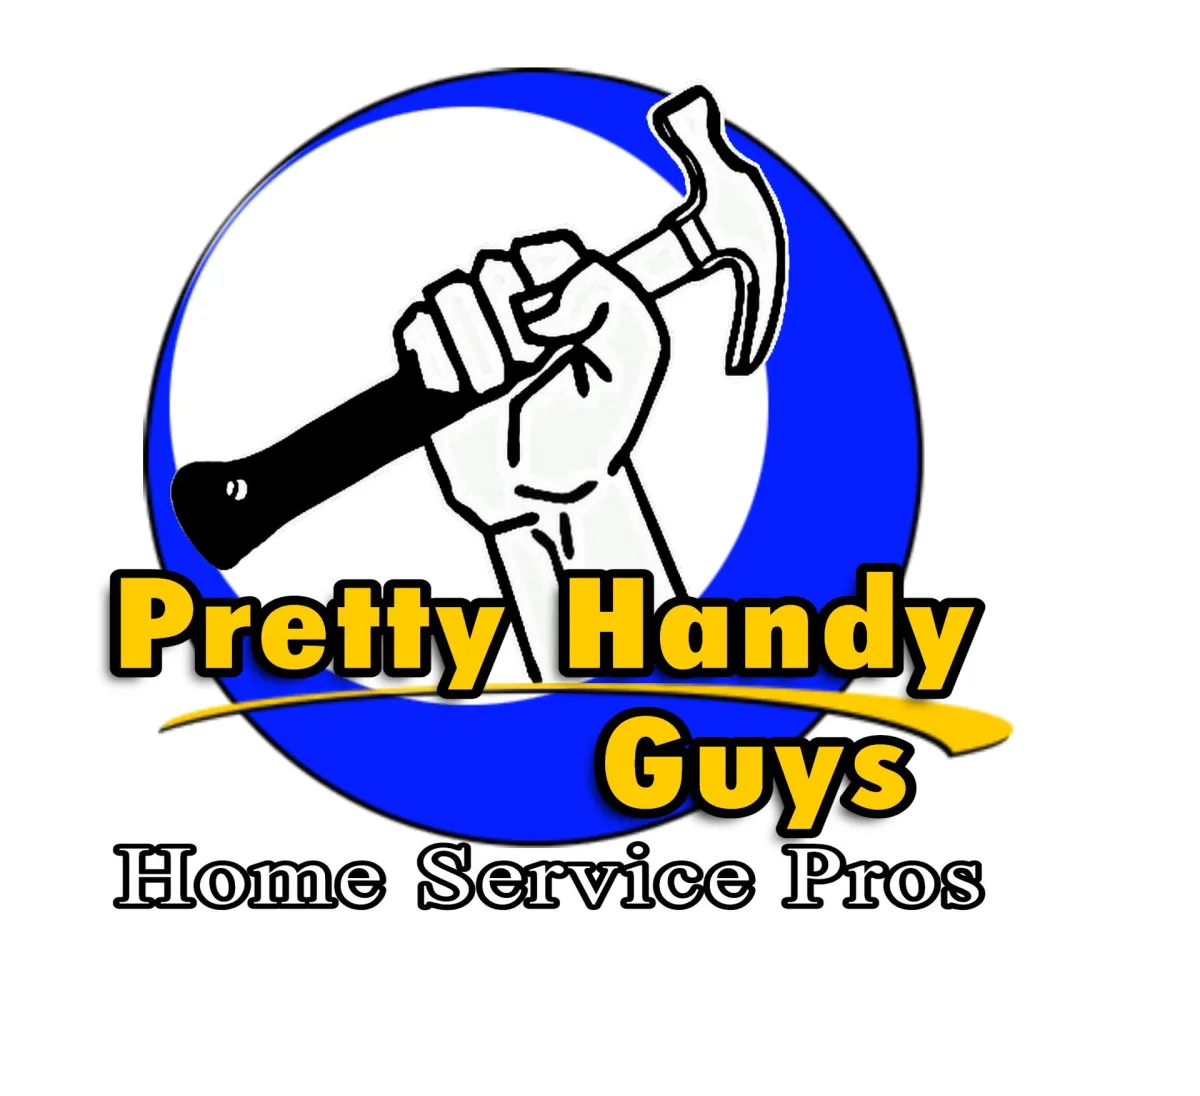 Pretty Handy Guy Brand Logo by Home Service Pros Marketing